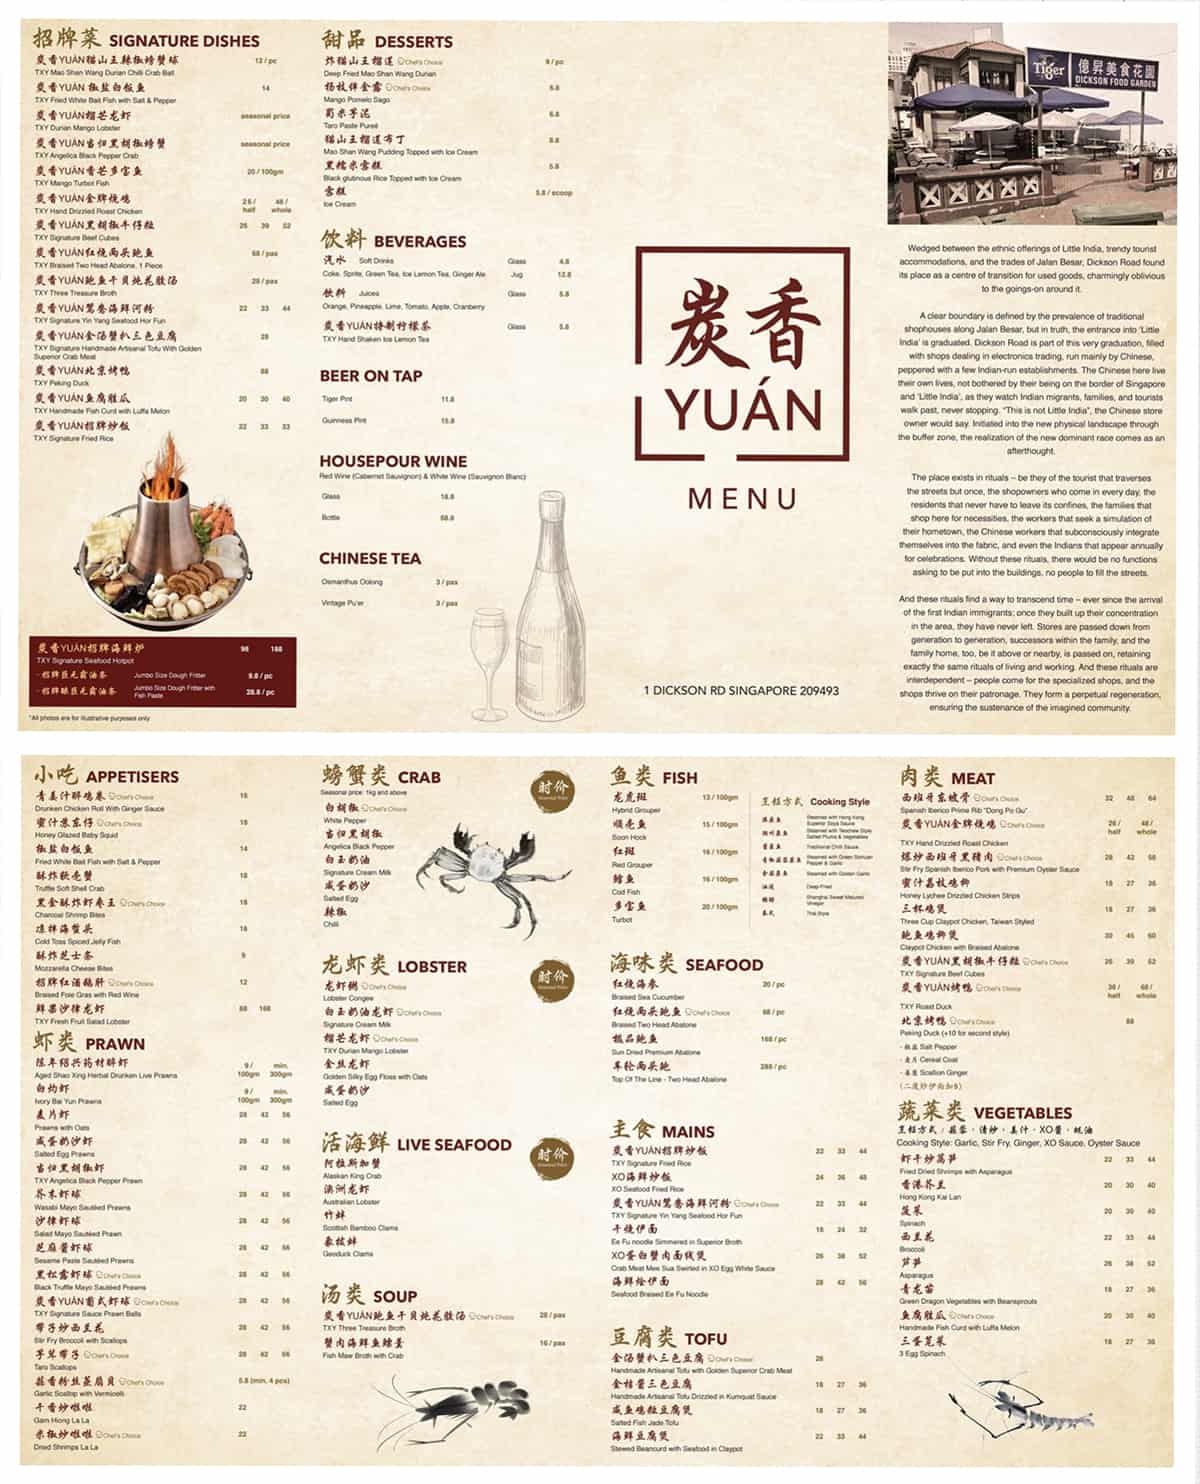 tan-xiang-yuan-menu